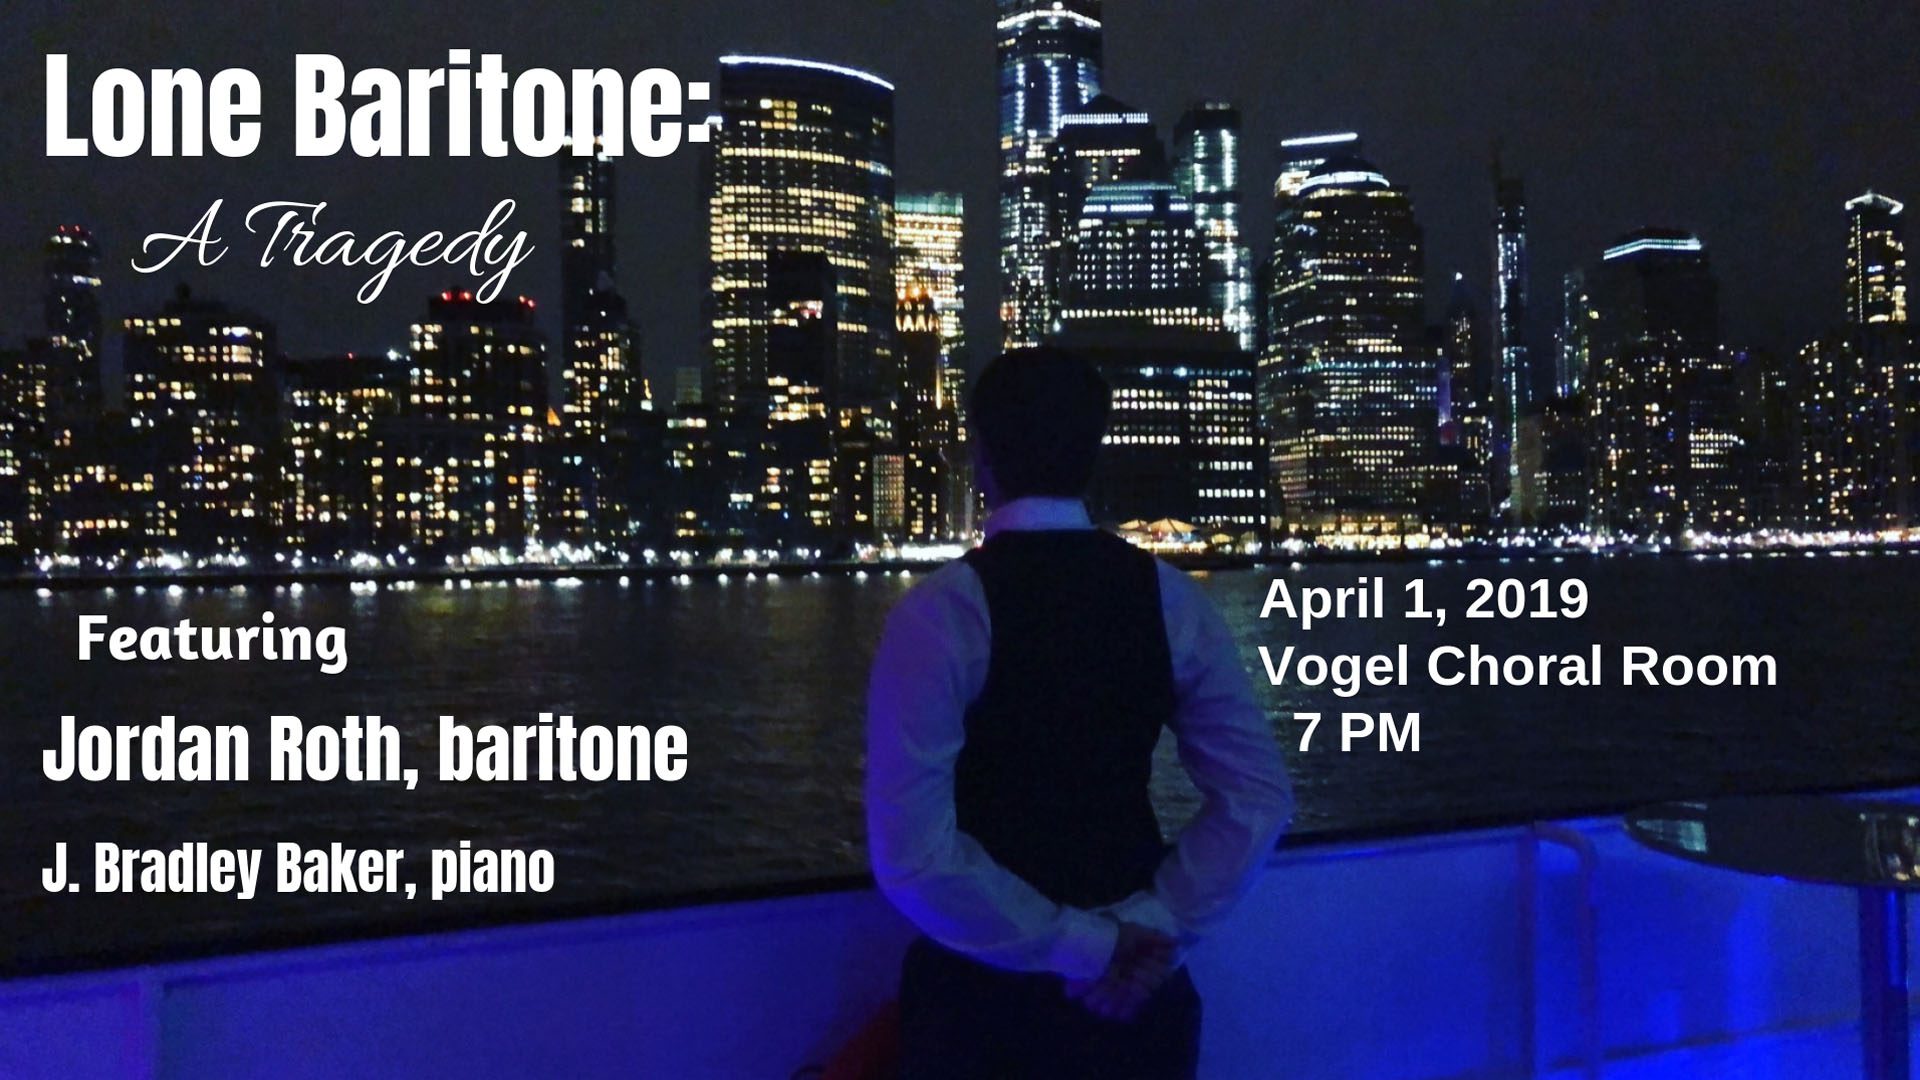 Lone Baritone concert poster